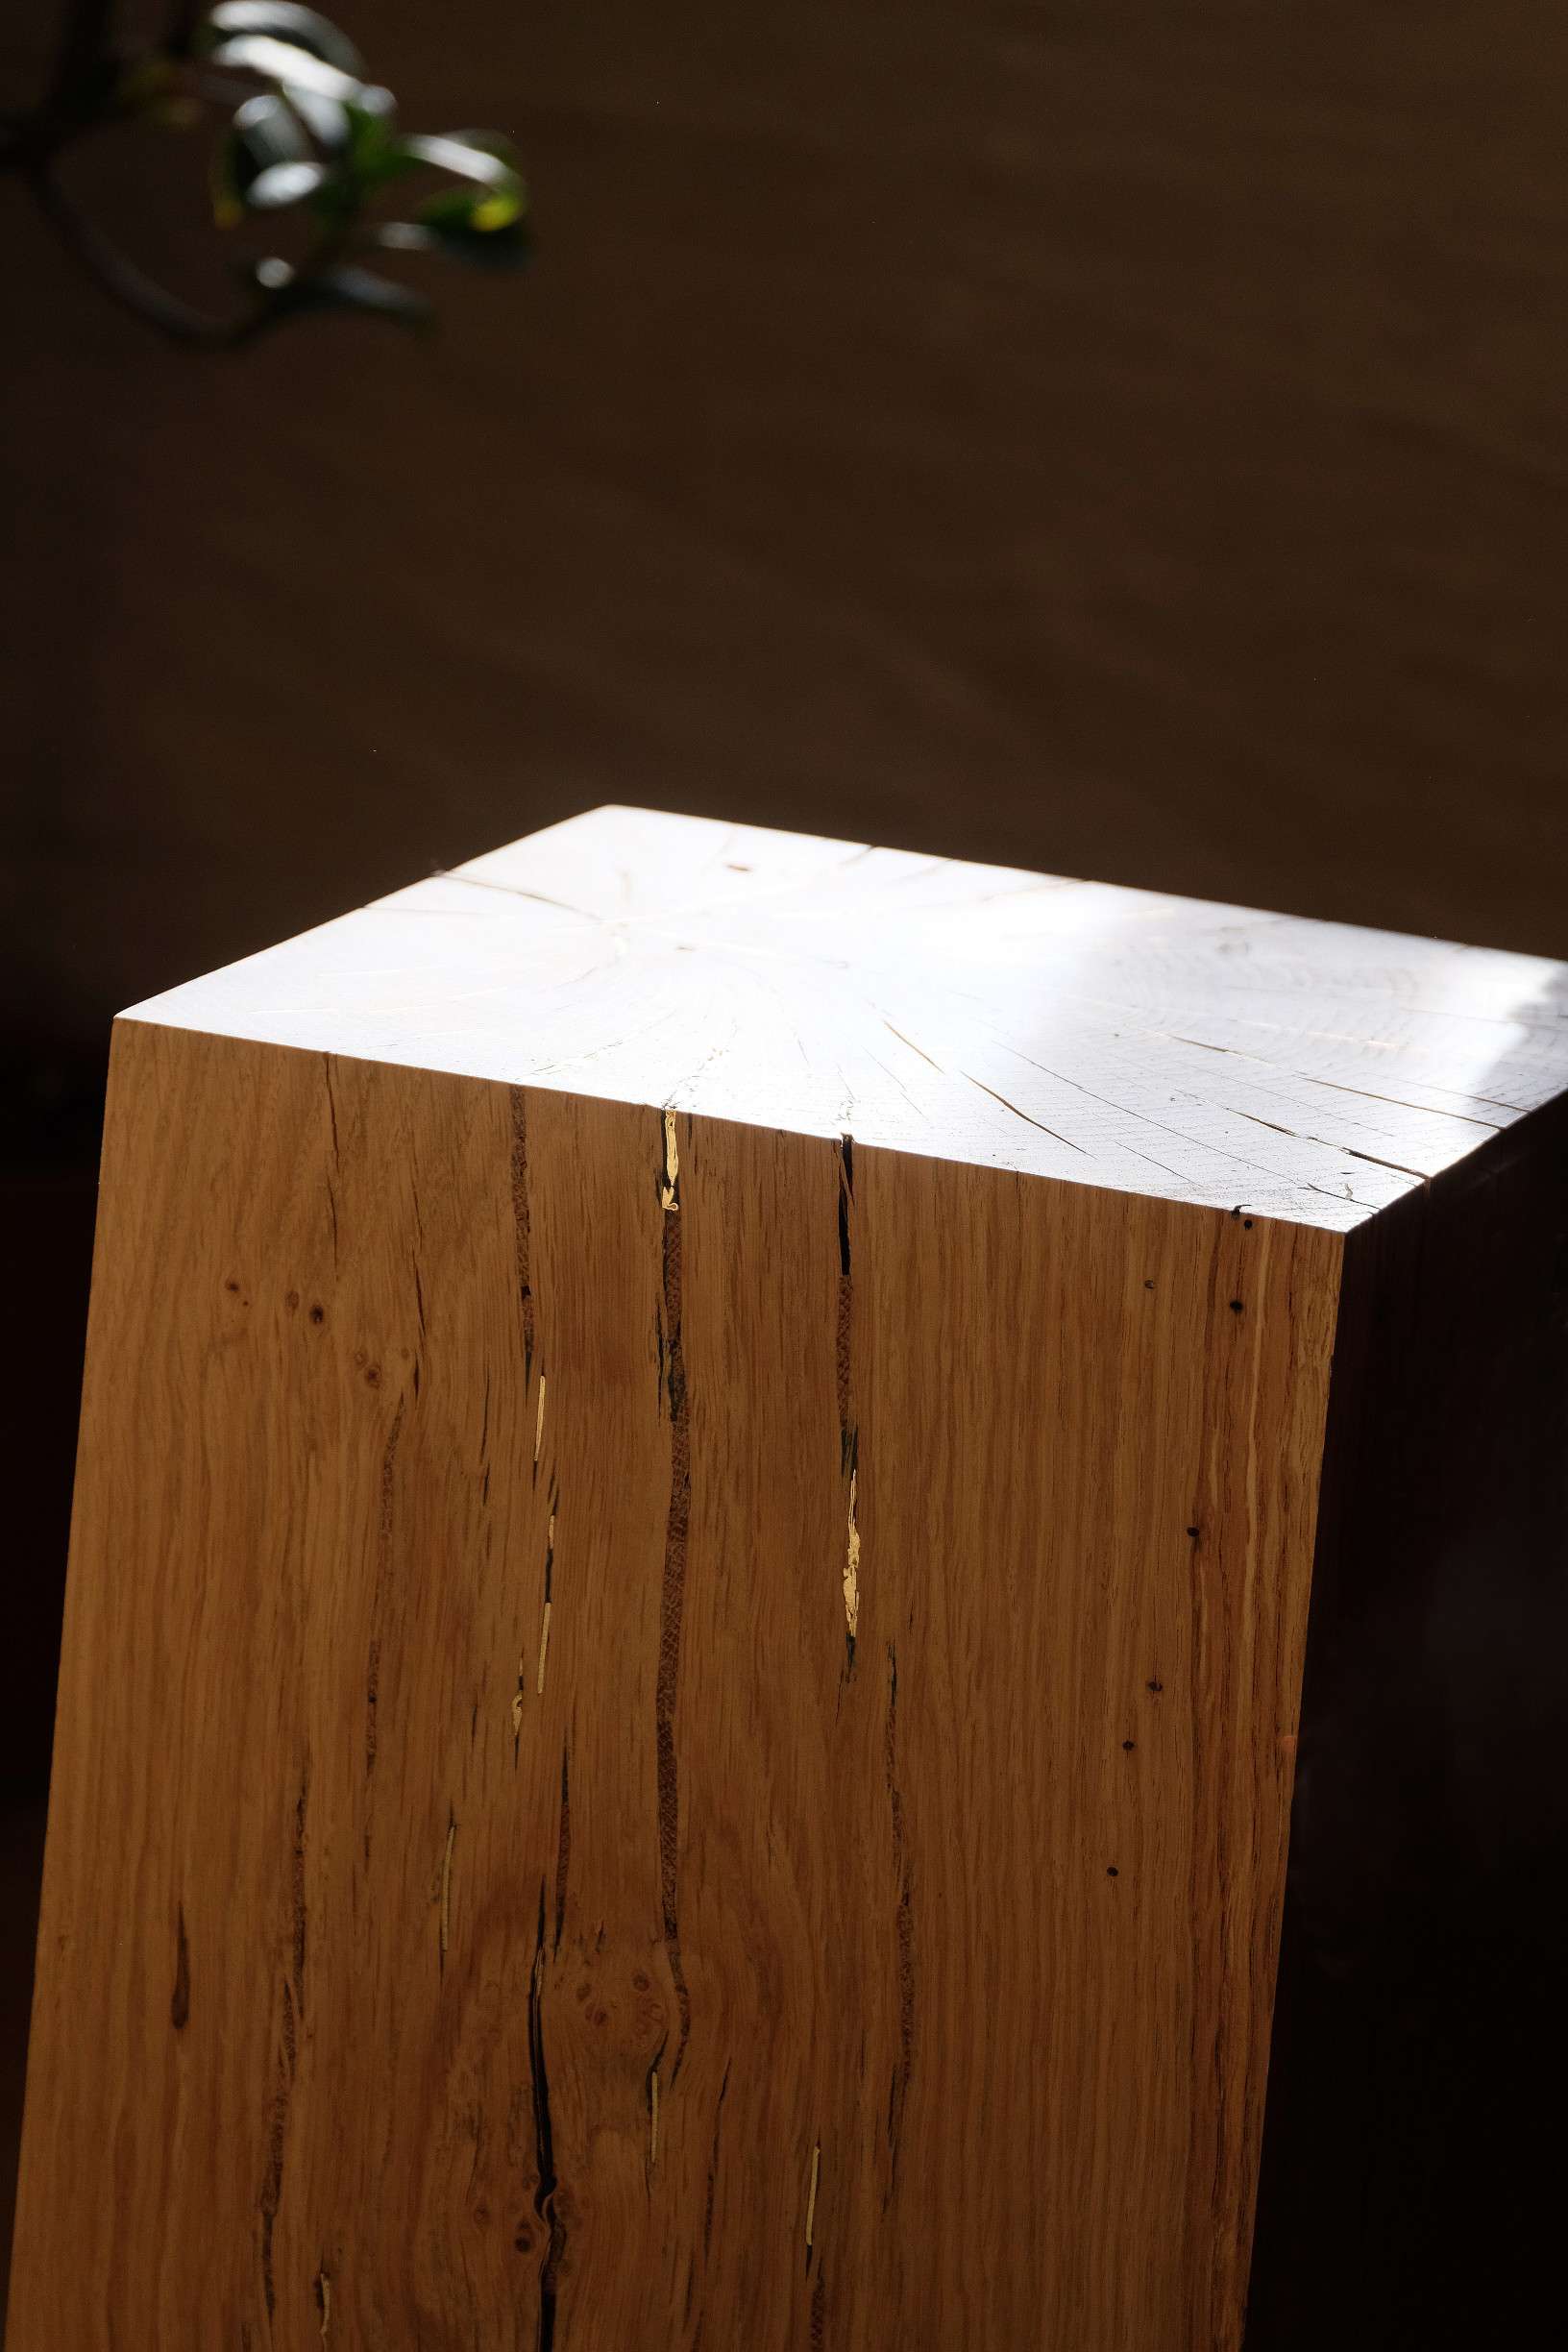 Cube en bois incrusté- Chêne massif - Les Ateliers Brizepierre